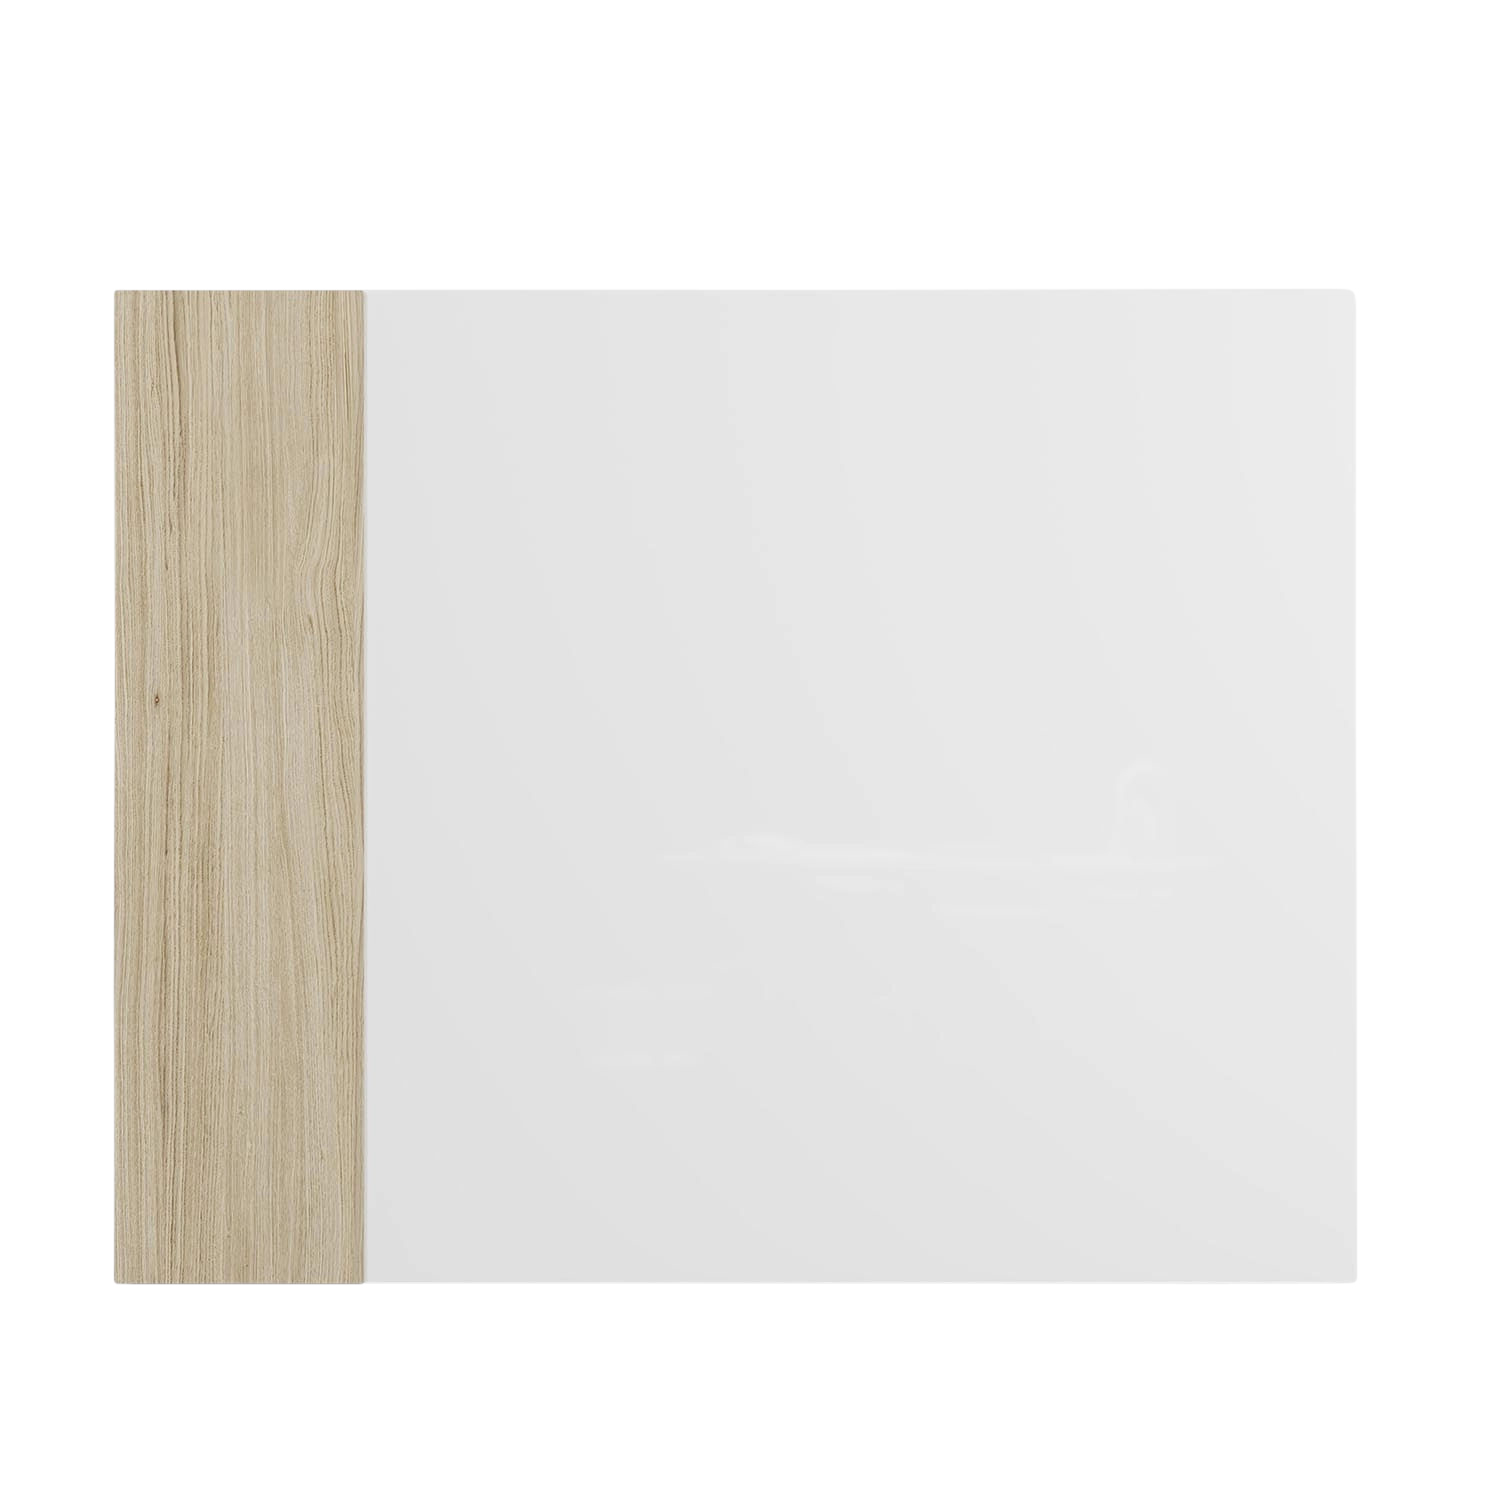 Classic Crafted Schreibtafel, Grösse 90 x 70 cm, Ausrichtung horizontal, Glas sand 31 mtsa von Chat Board